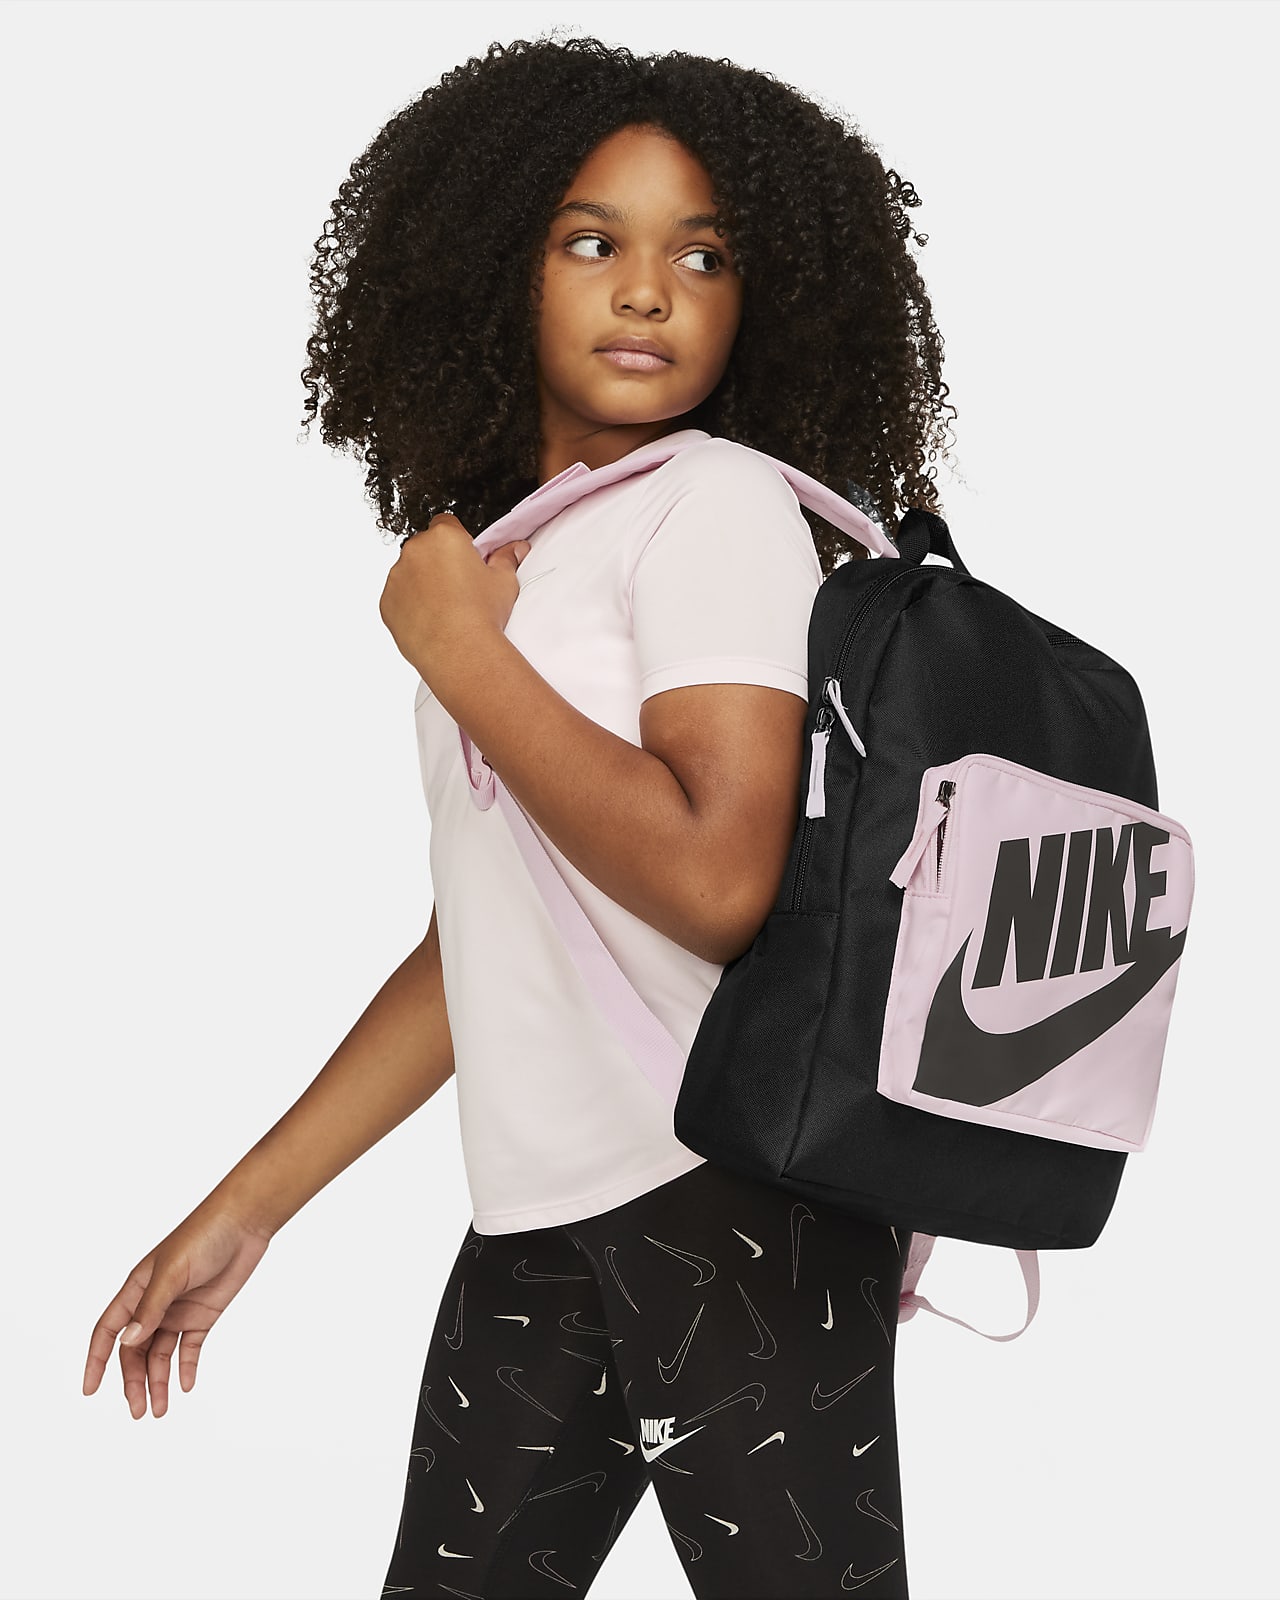 Nike Classic-rygsæk børn (16 L). DK